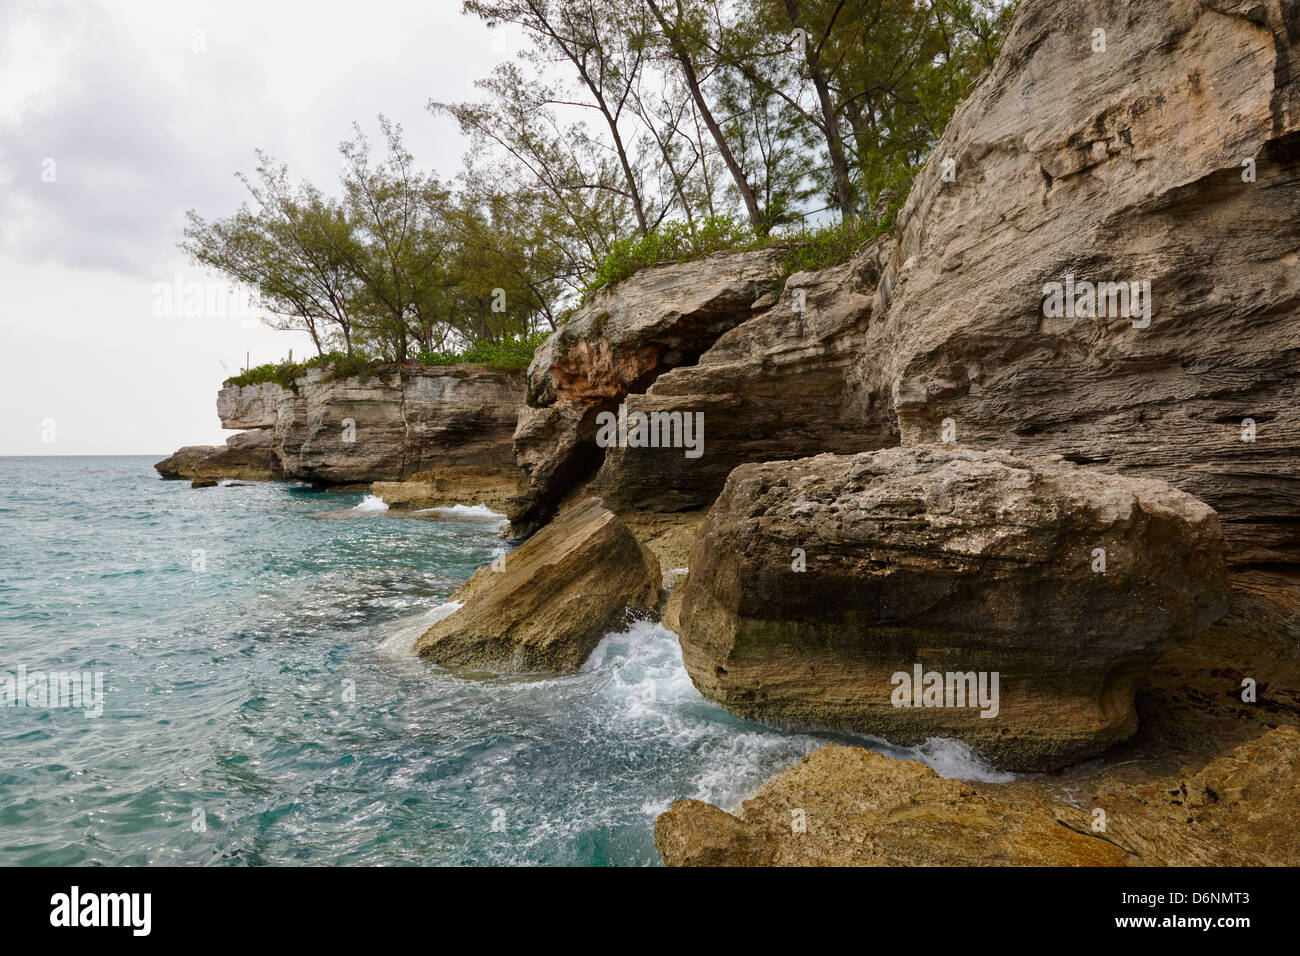 Clifton Point Cliffs, New Providence Island, Bahamas Stock Photo